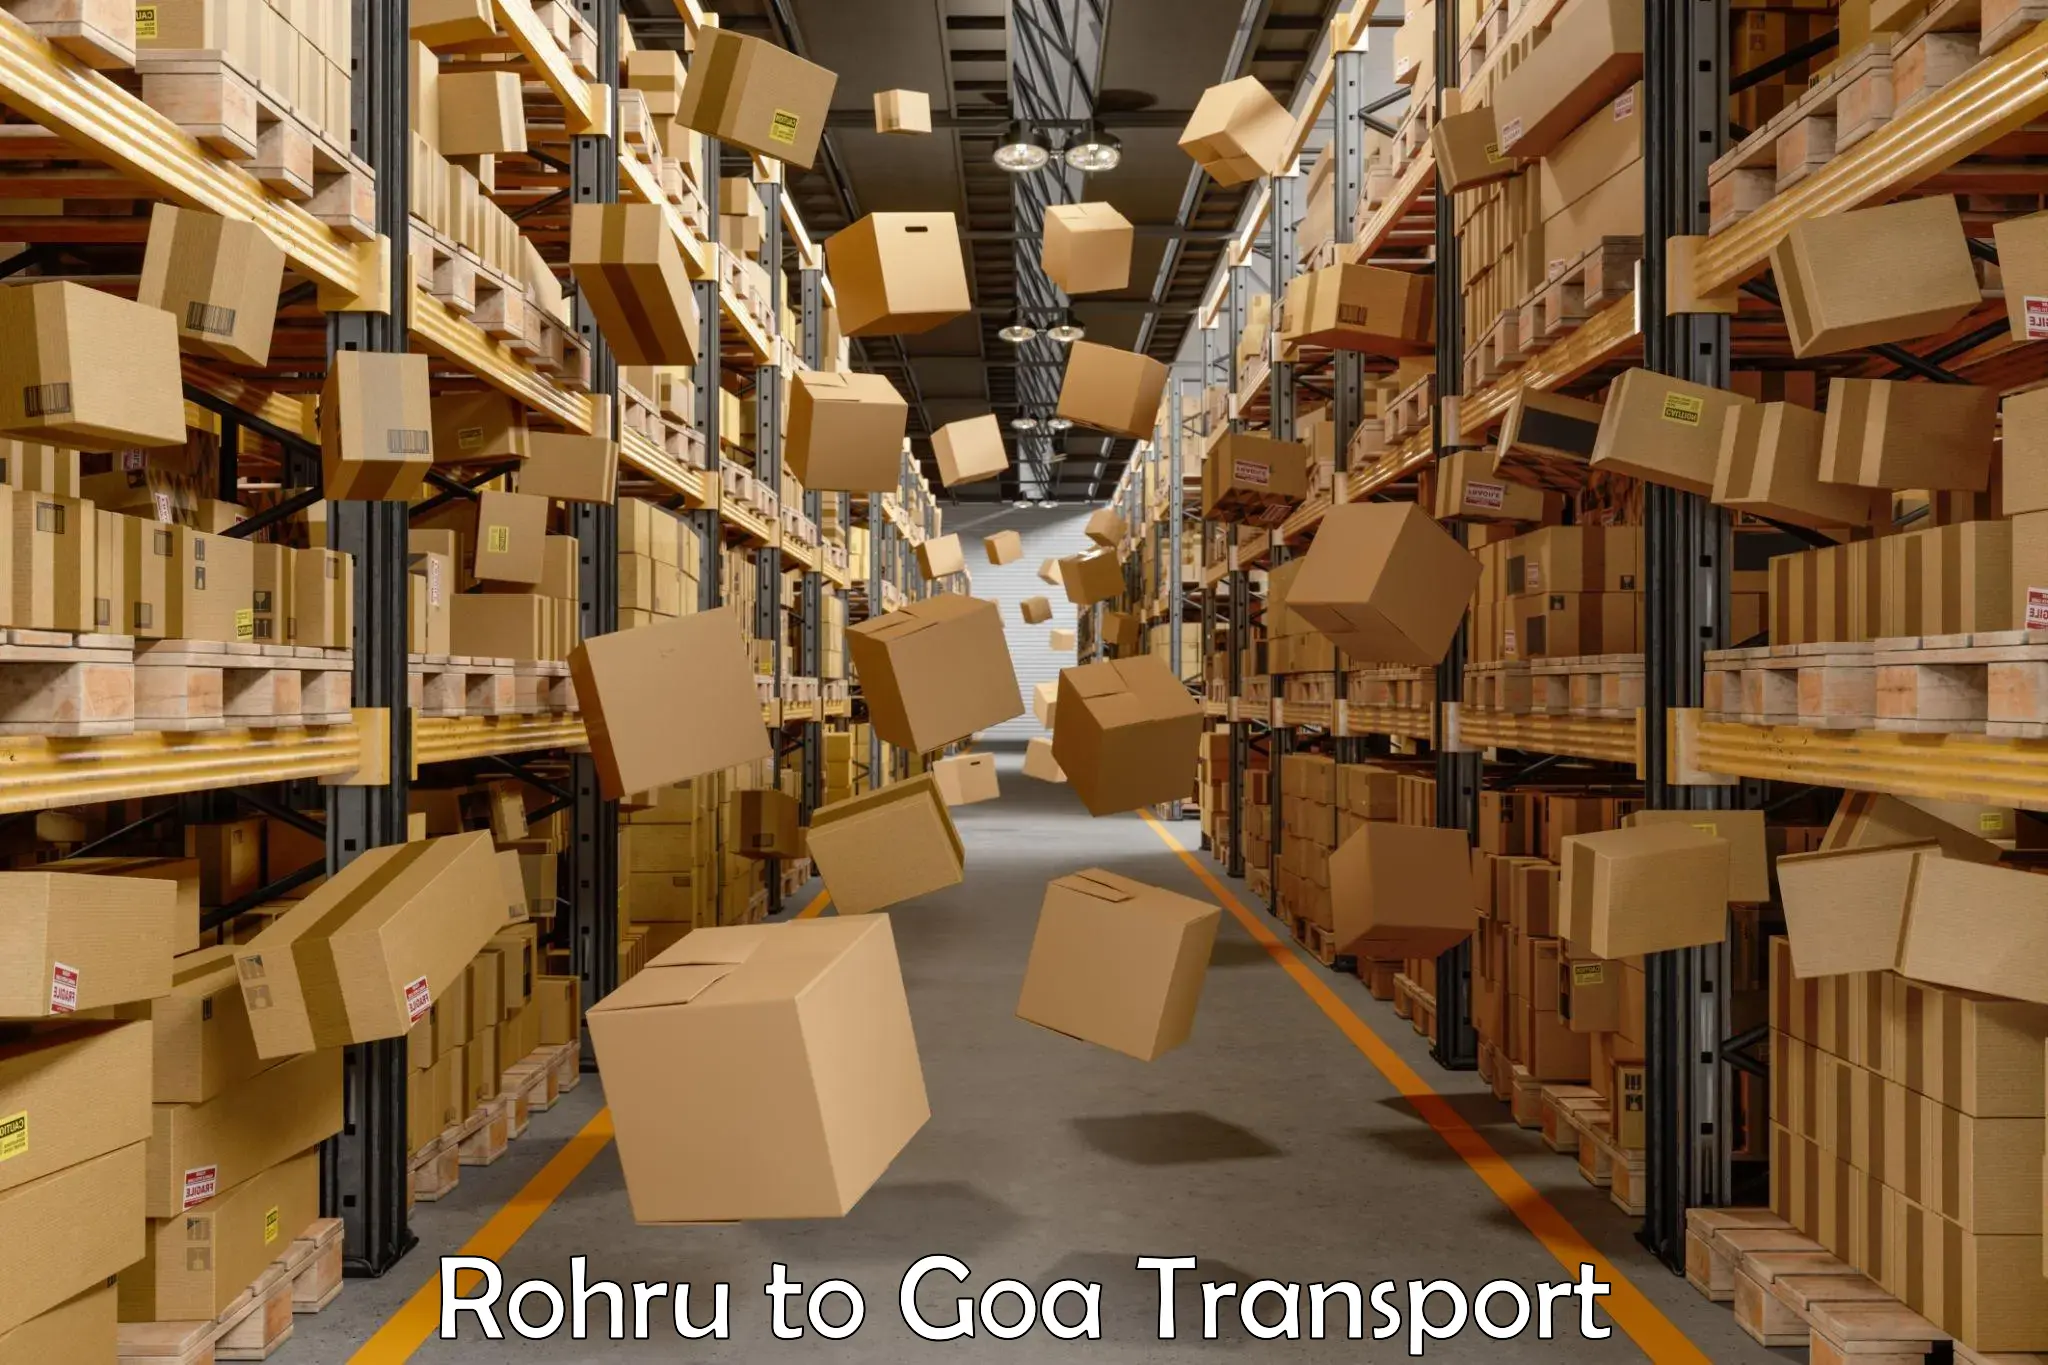 Truck transport companies in India Rohru to Mormugao Port